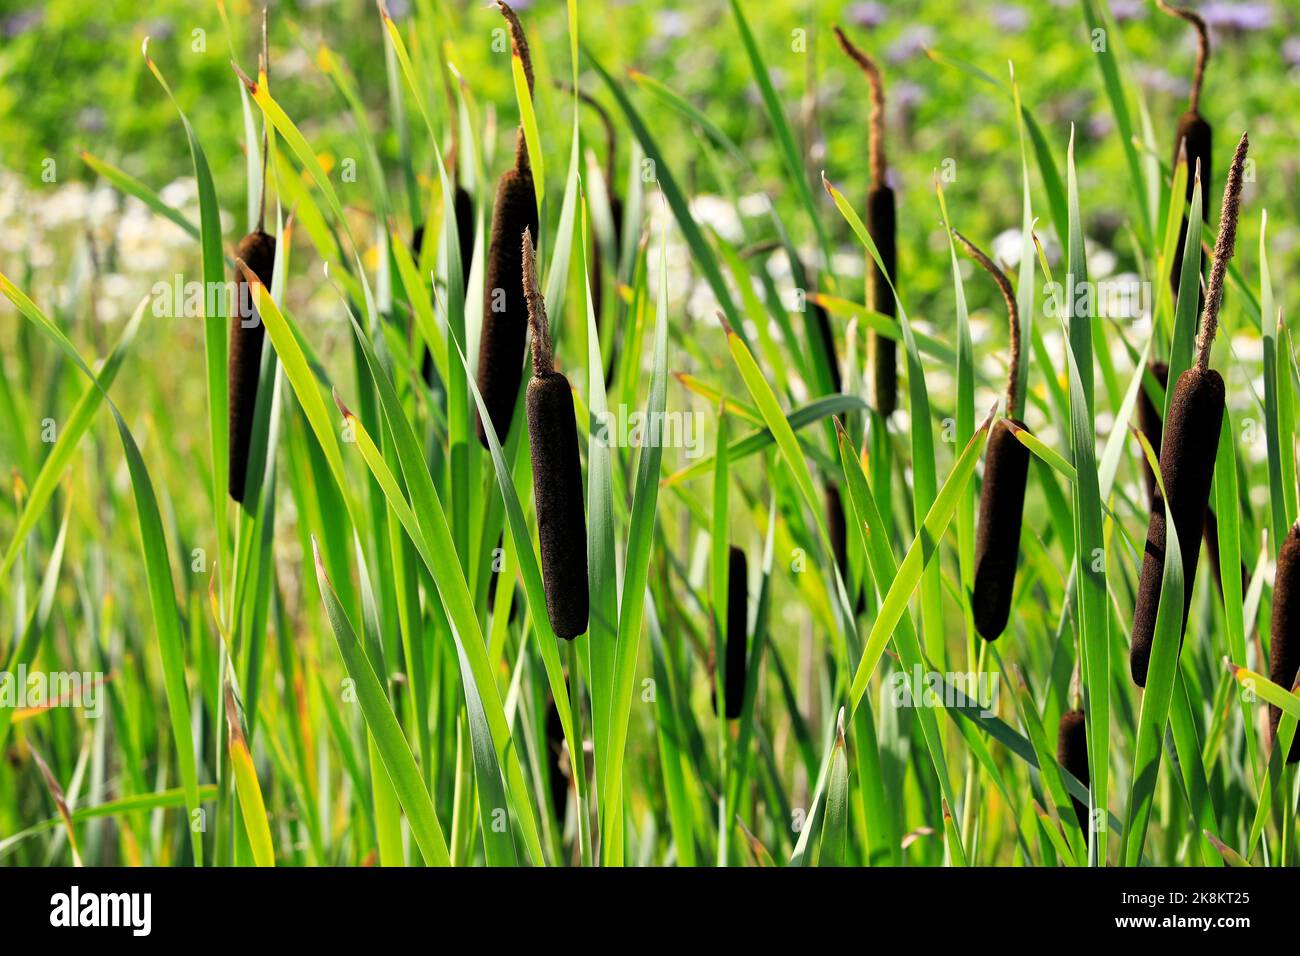 Typha latifolia, chiamato anche rush o Cattail comune che cresce in una trincea. La fibra di Typha ha un potenziale per essere una fibra tessile nuova e sostenibile. Foto Stock